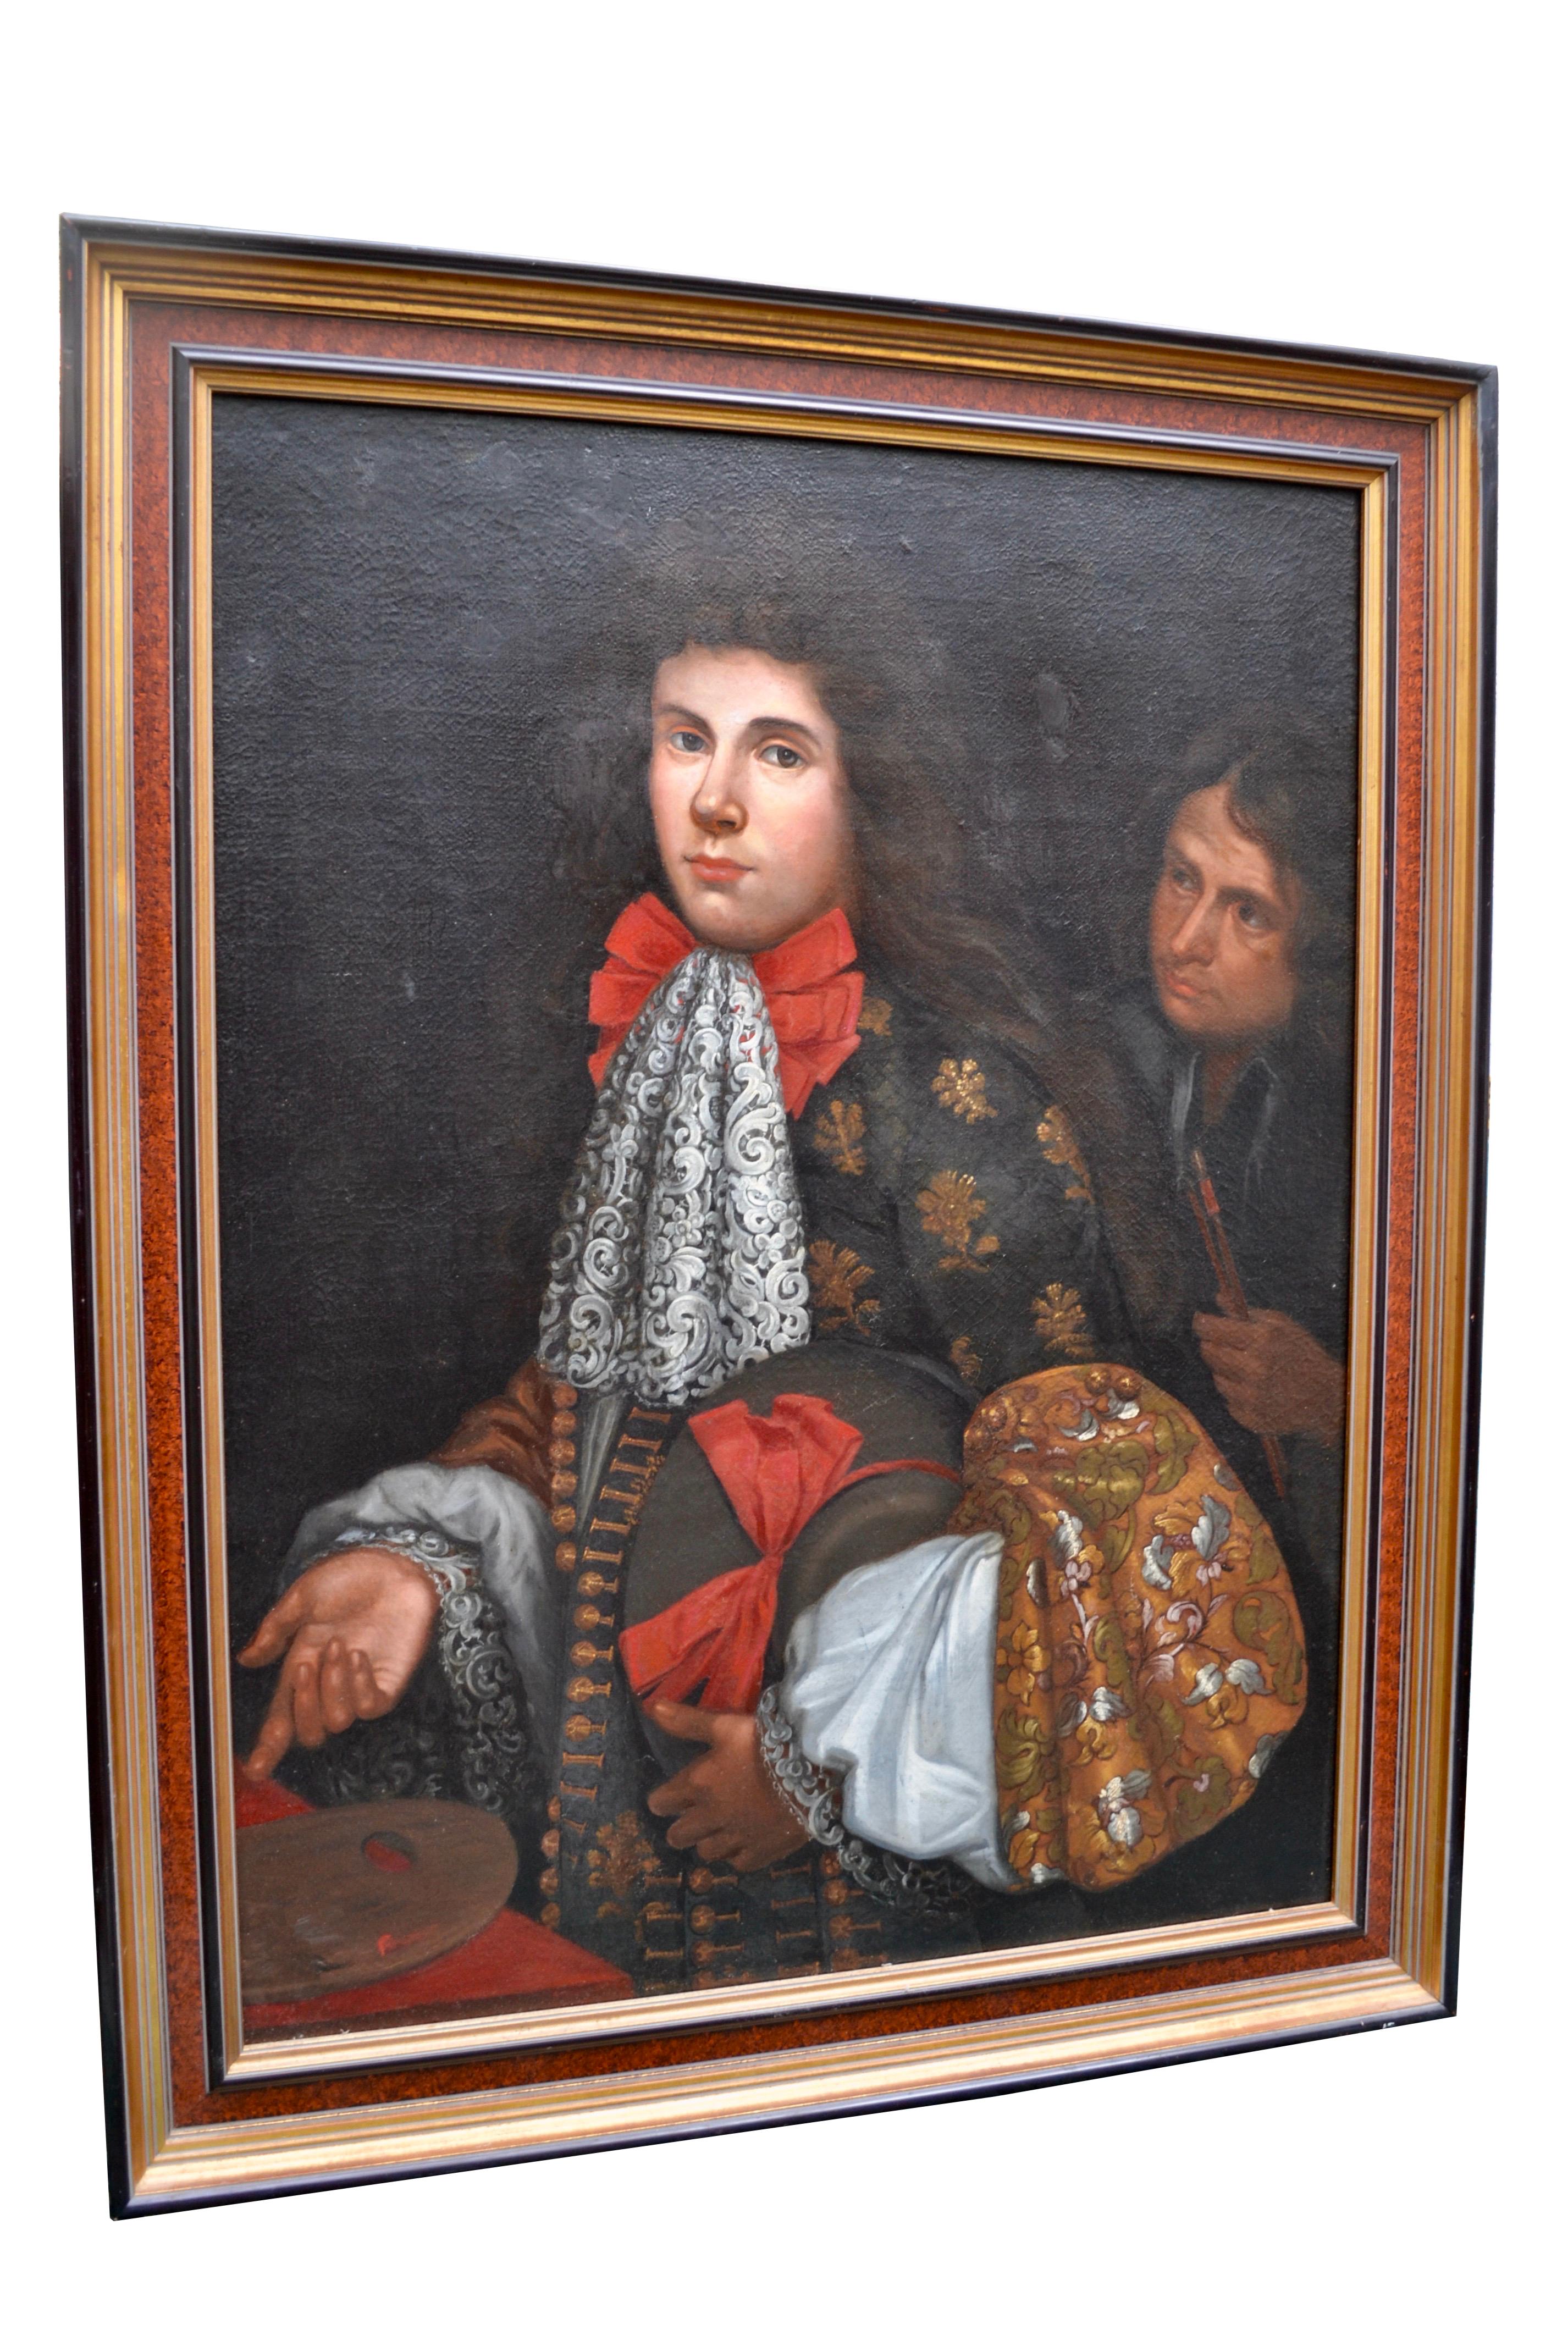 Portrait de trois quarts de long d'un aristocrate du XIXe siècle, avec son valet de chambre derrière lui. Le jeune homme aux cheveux longs et vaporeux est représenté à partir de la taille et vêtu d'une parure de cour très élaborée. Il est présenté